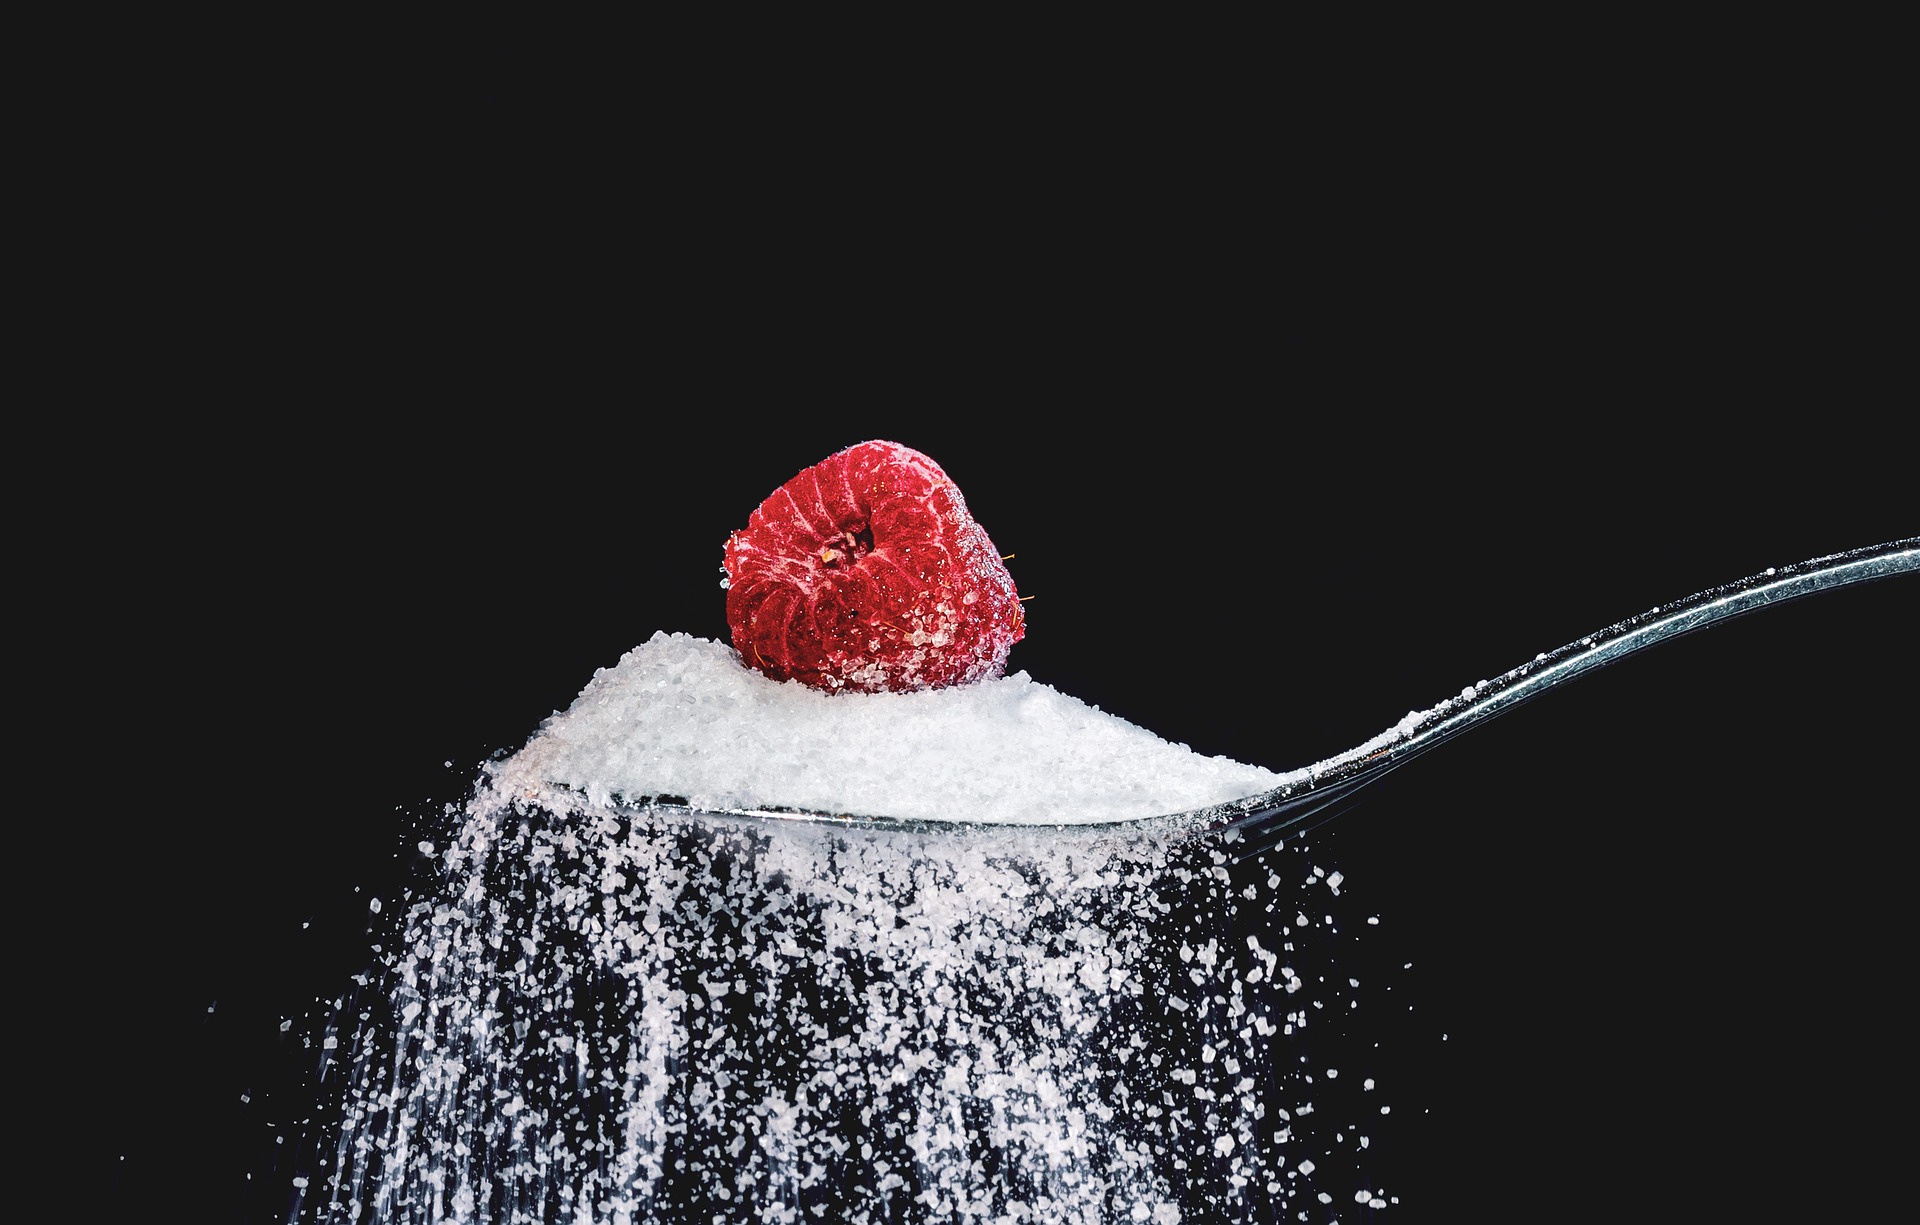 Причины необходимости в исключении из рациона сахара. Безопасны ли его заменители?